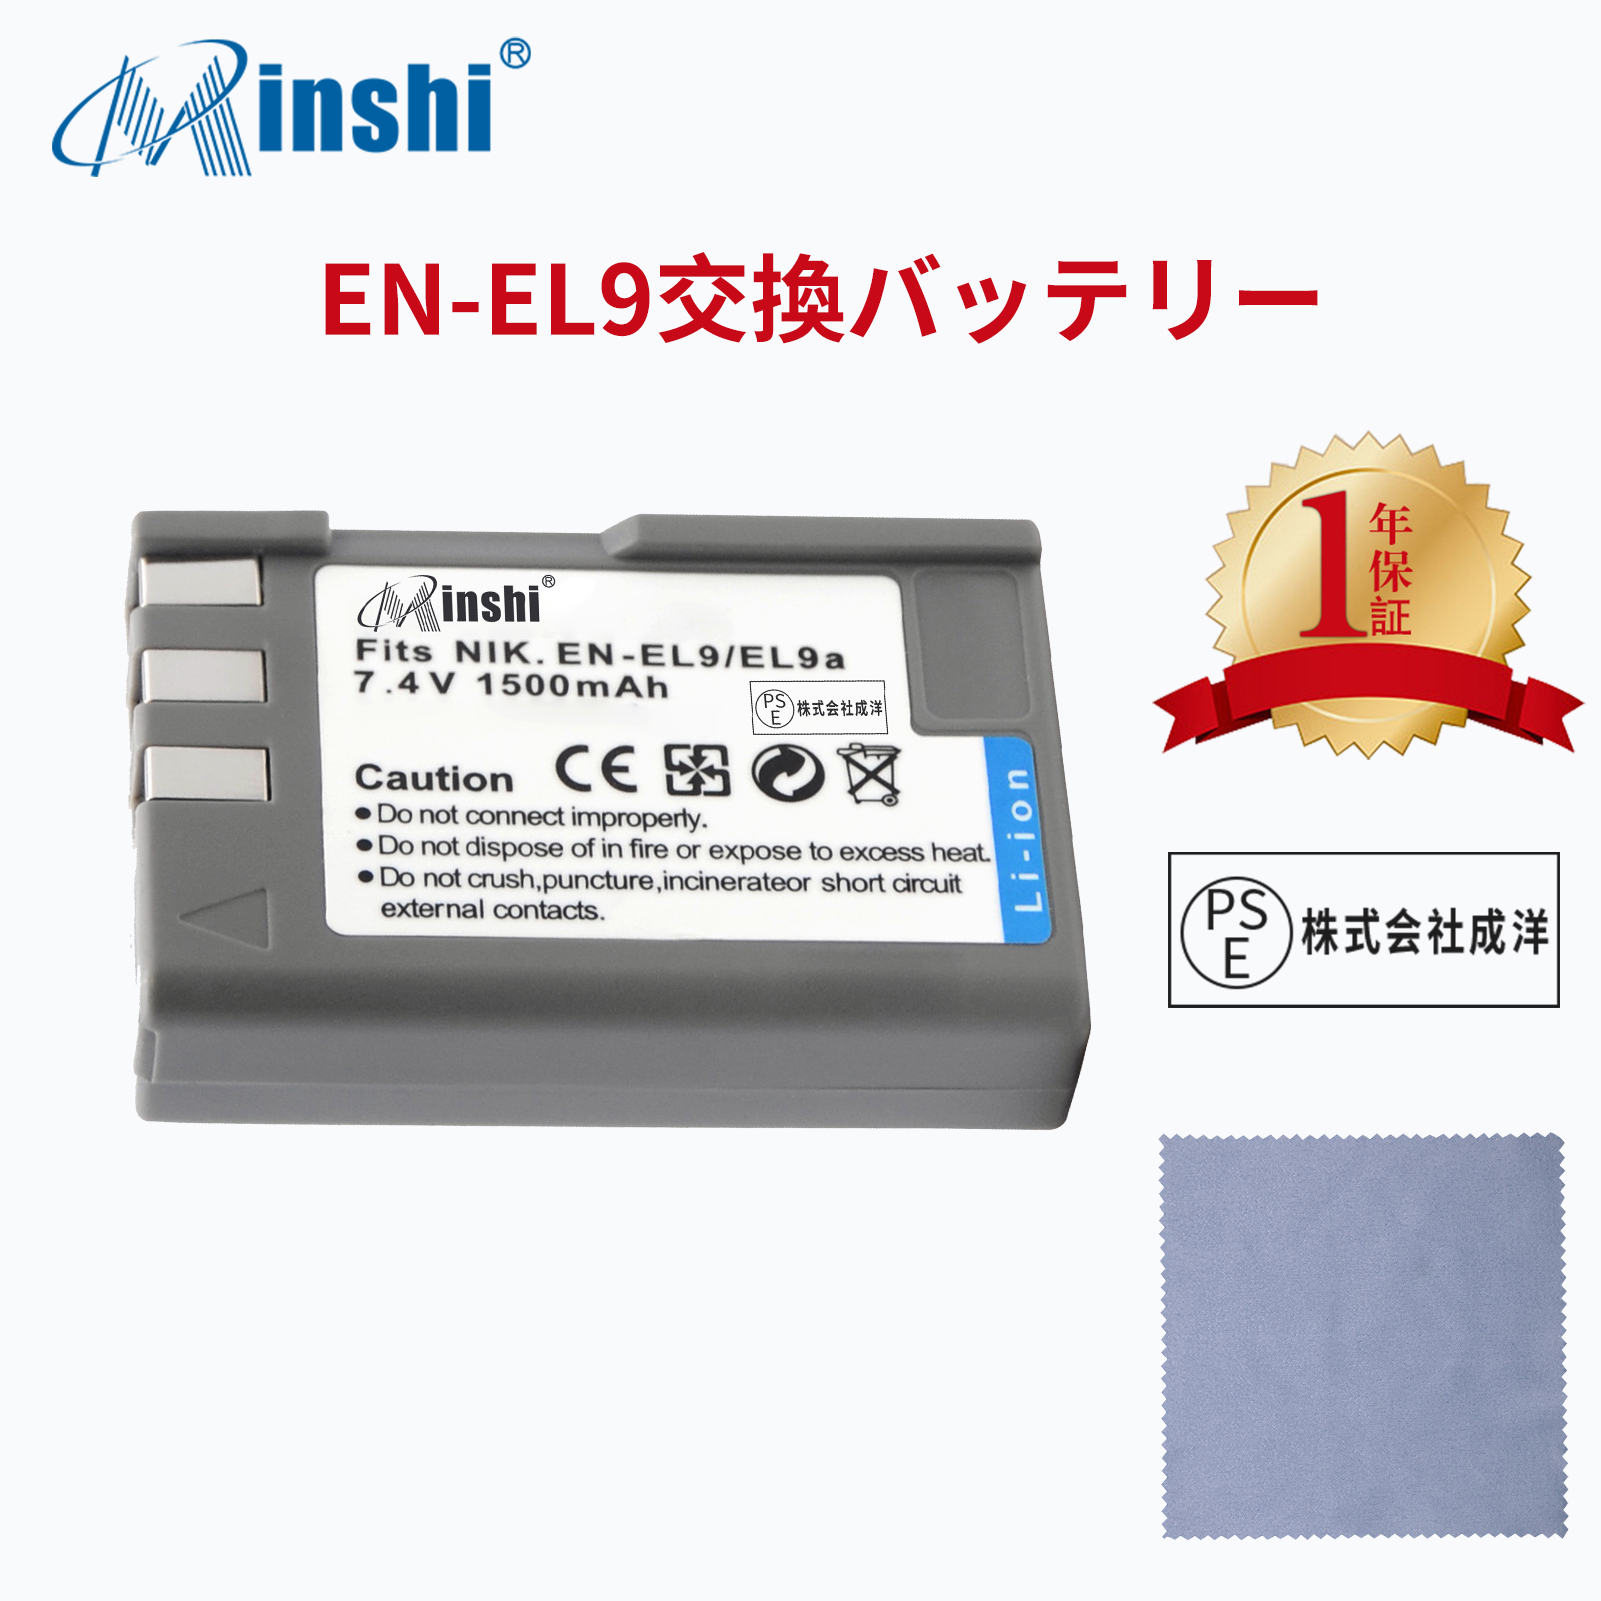 【クロス付き】 minshi NIKON EN-EL9a EN-EL9a EN-EL9e 対応  1500mAh PSE認定済 高品質EN-EL9 EN-EL9a EN-EL9e互換バッテリーPHB